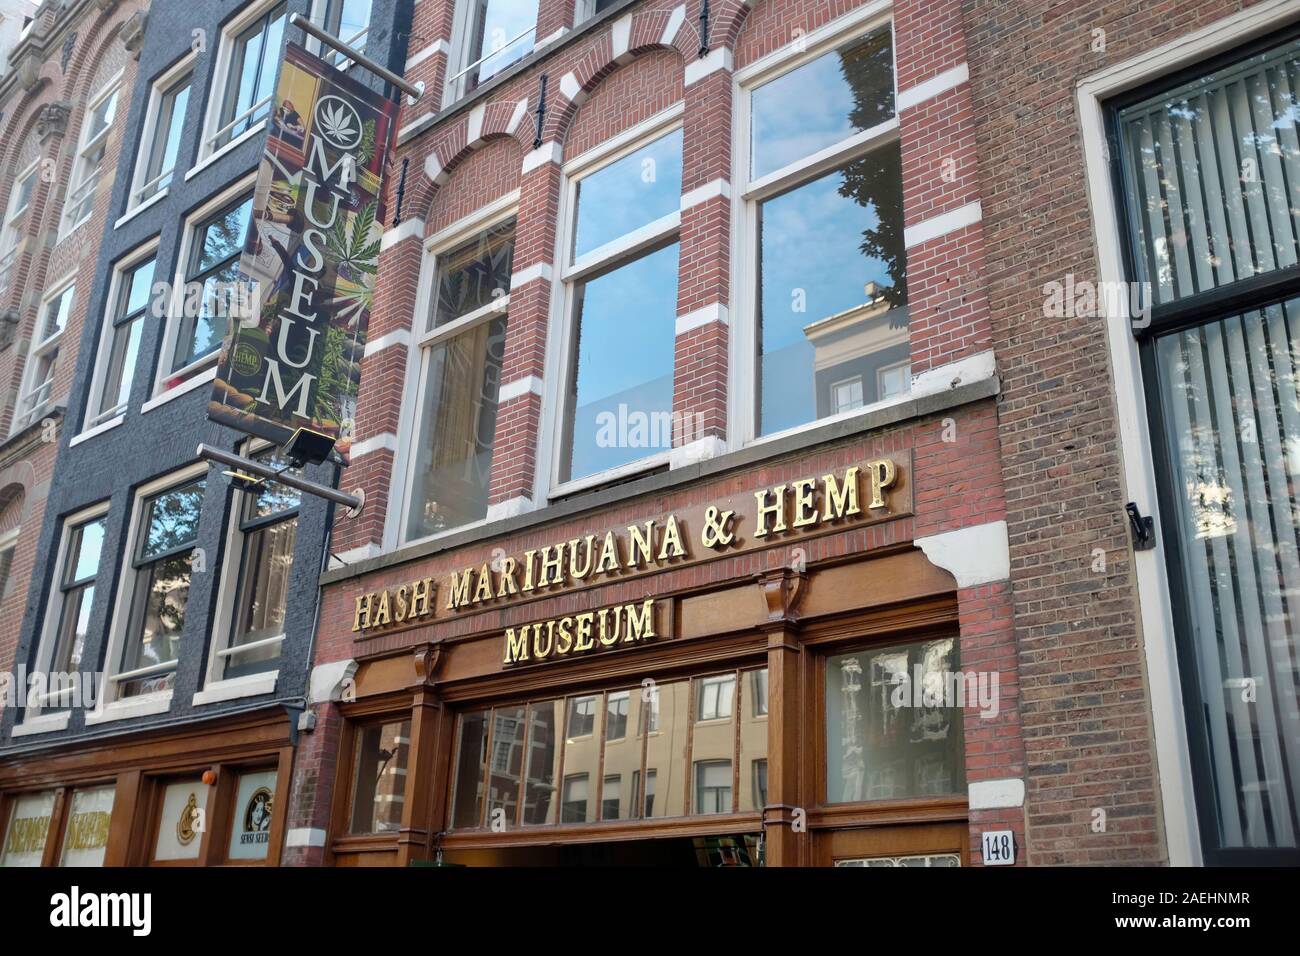 Hash Marihuana & Hemp Museum, Amsterdam, Netherlands Stock Photo